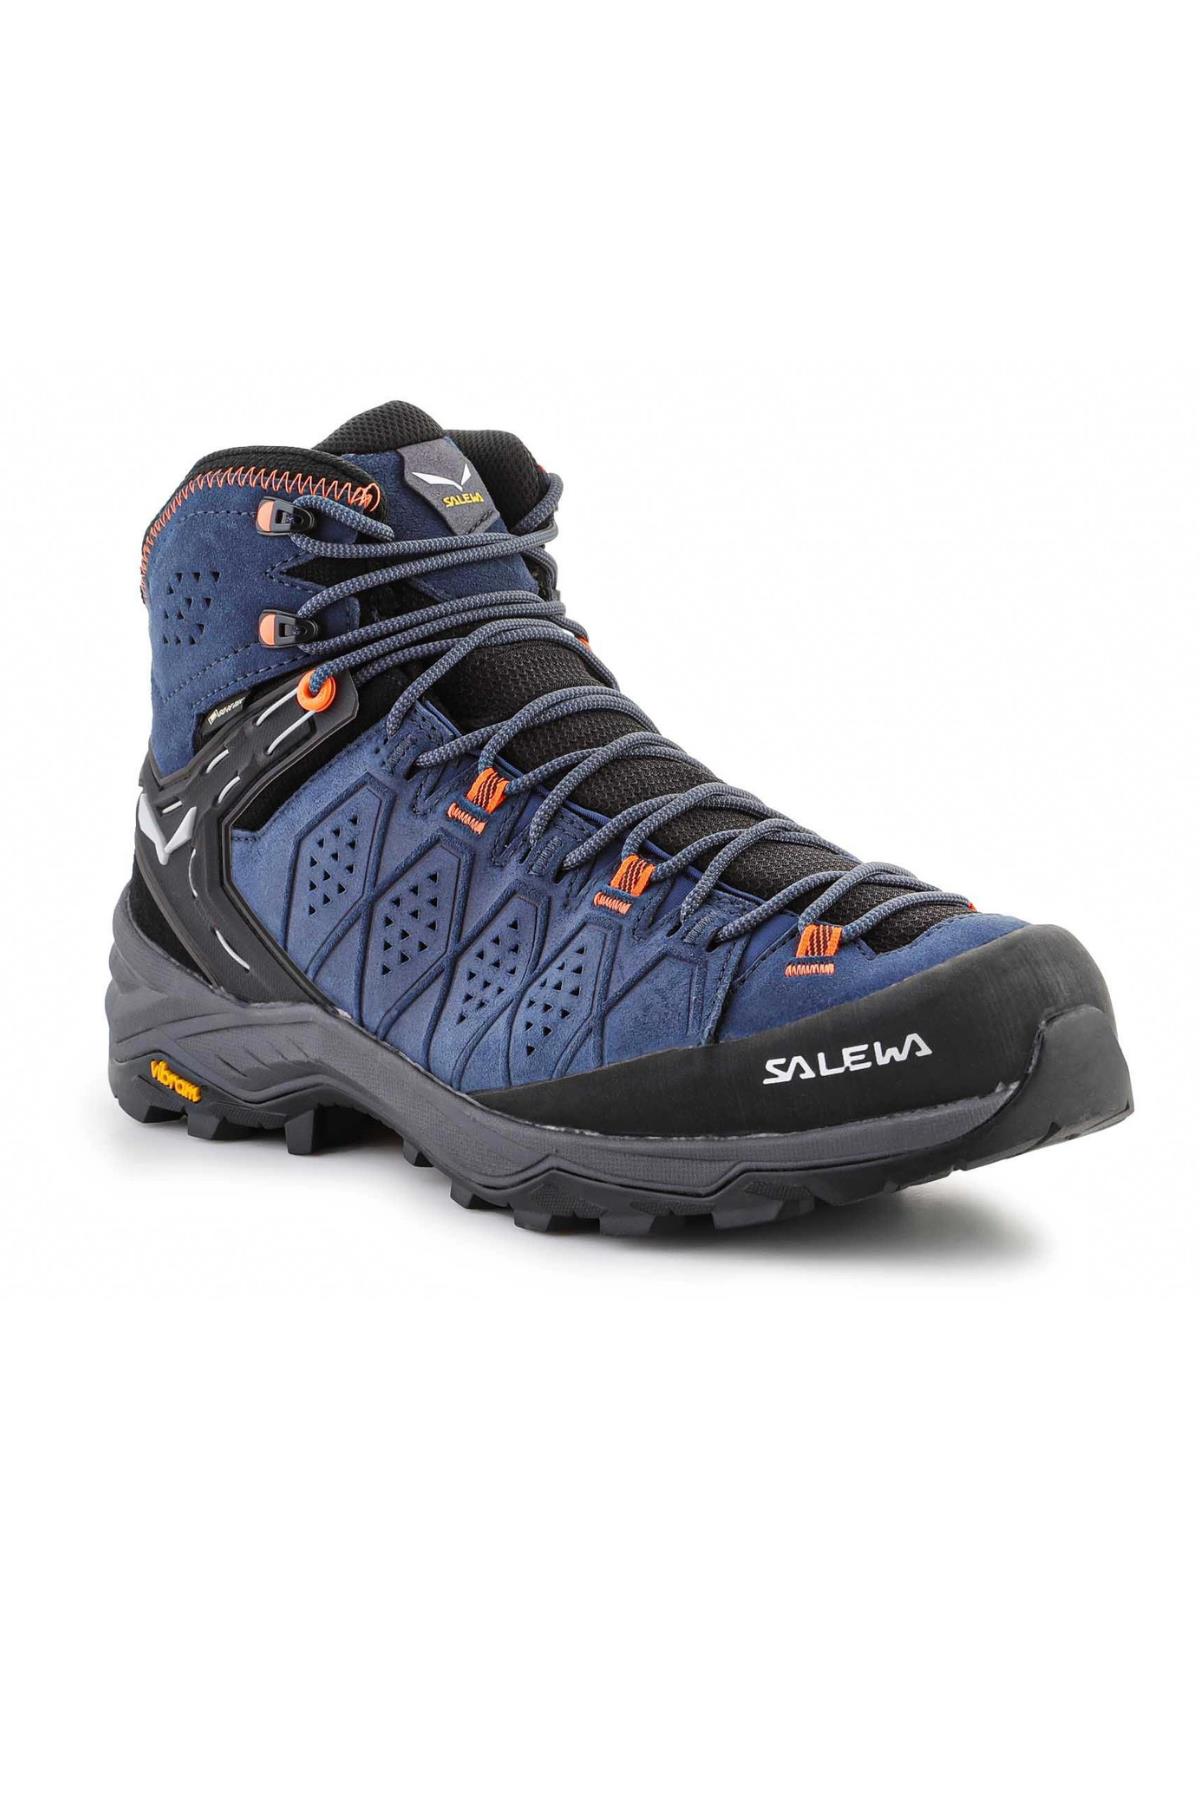 Salewa MS Alp Trainer 2 Mid GTX Erkek Ayakkabı Mavi